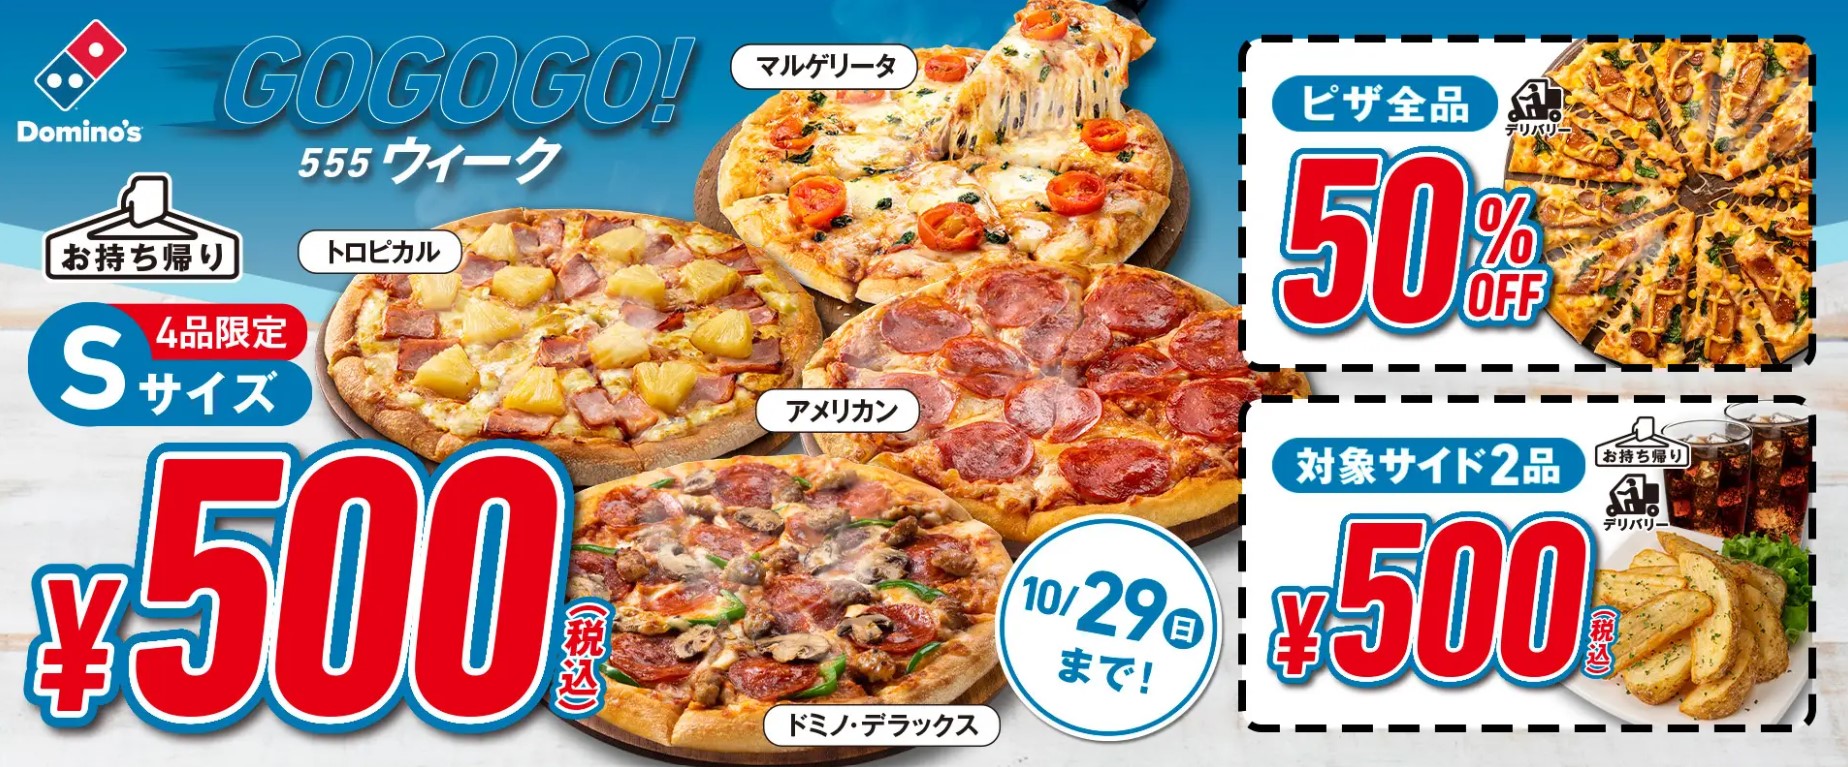 ドミノ･ピザ「GoGoGo!ウィーク」キャンペーンに「ドミノ・デラックス」追加